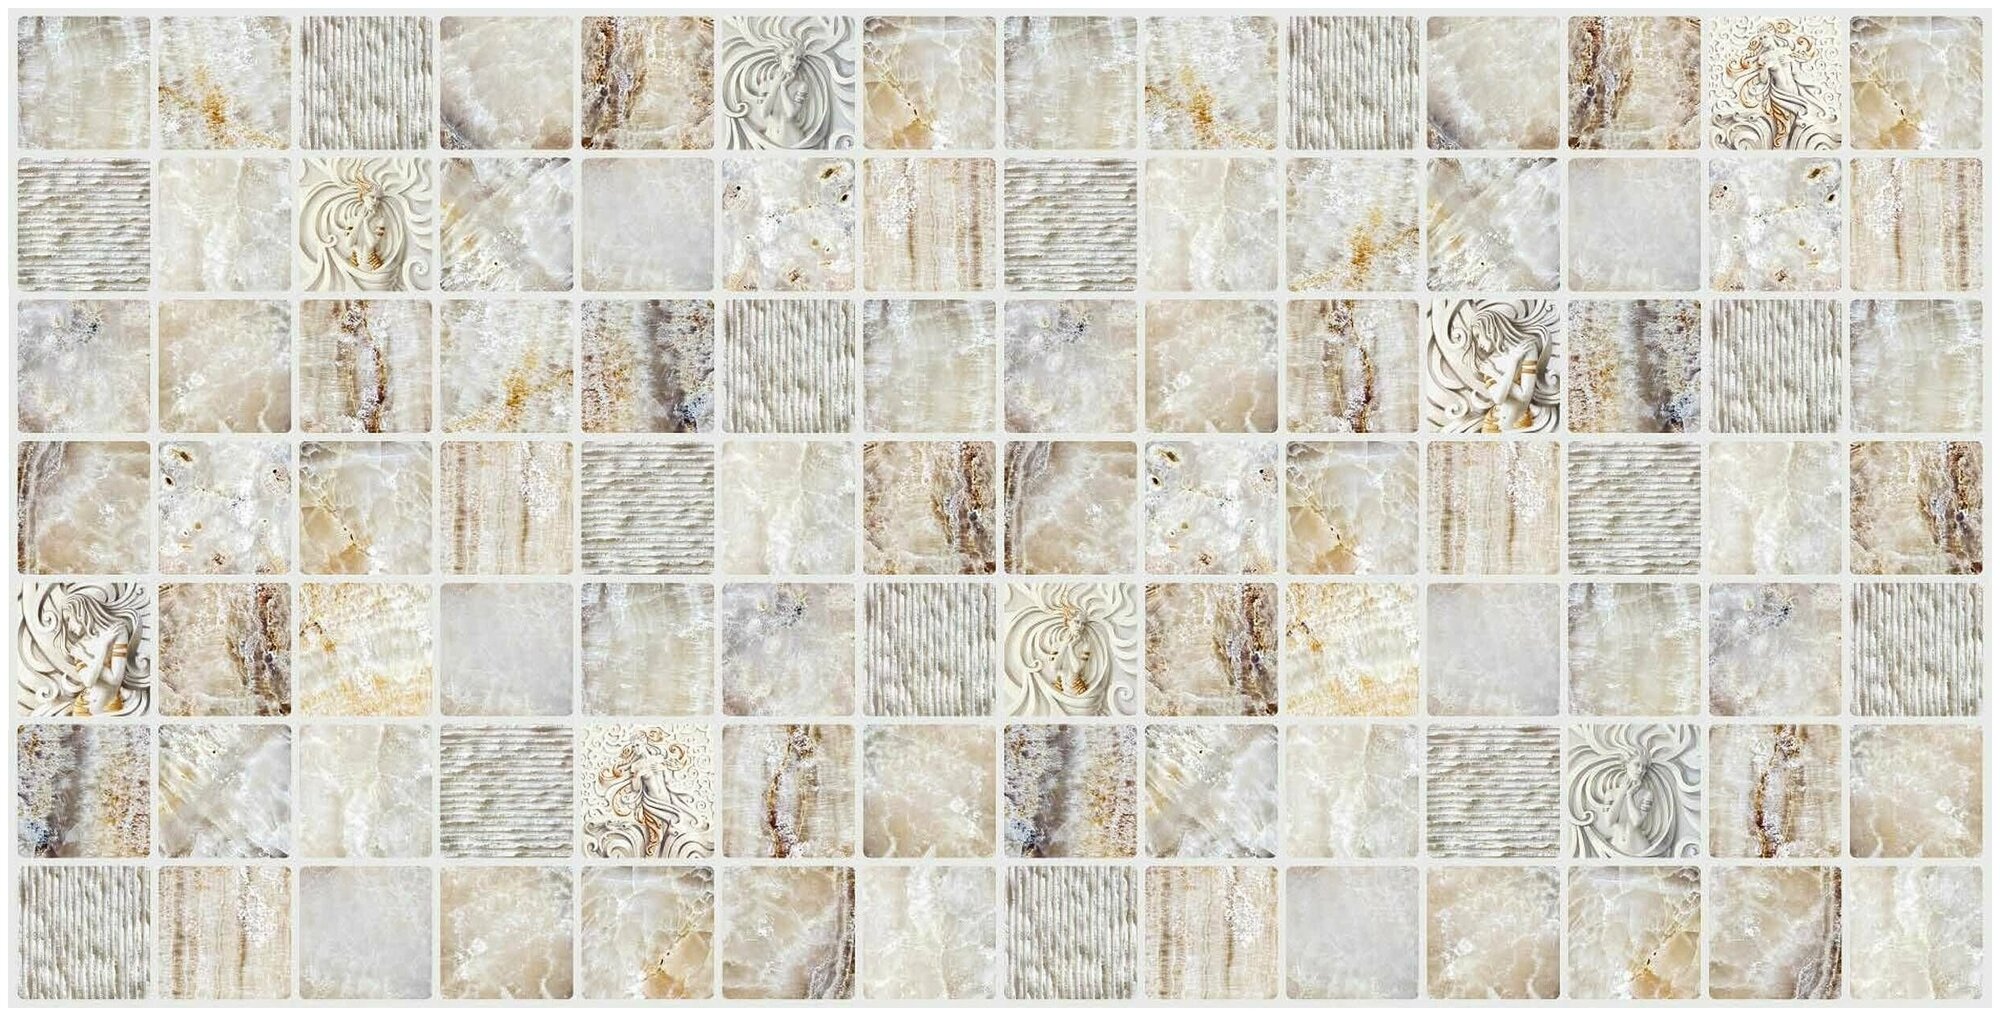 Панель ПВХ "Мрамор венецианский" мозайка 955х480 в количестве 10 штук (4,58м2)